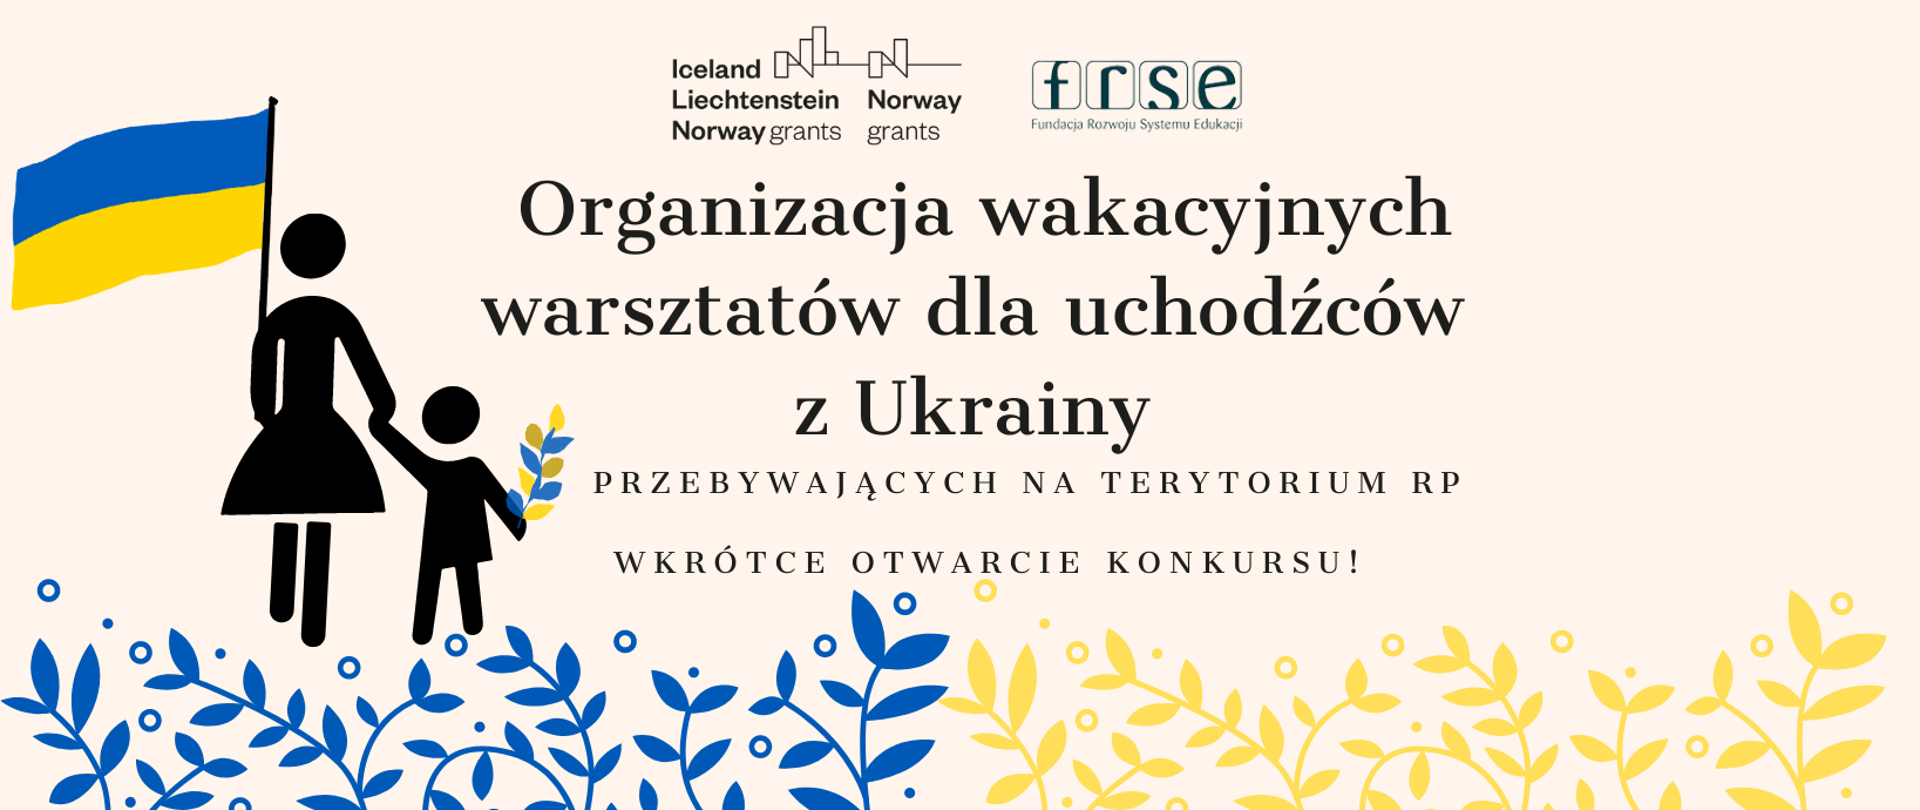 Organizacja wakacyjnych warsztatów edukacyjnych dla uchodźców z Ukrainy